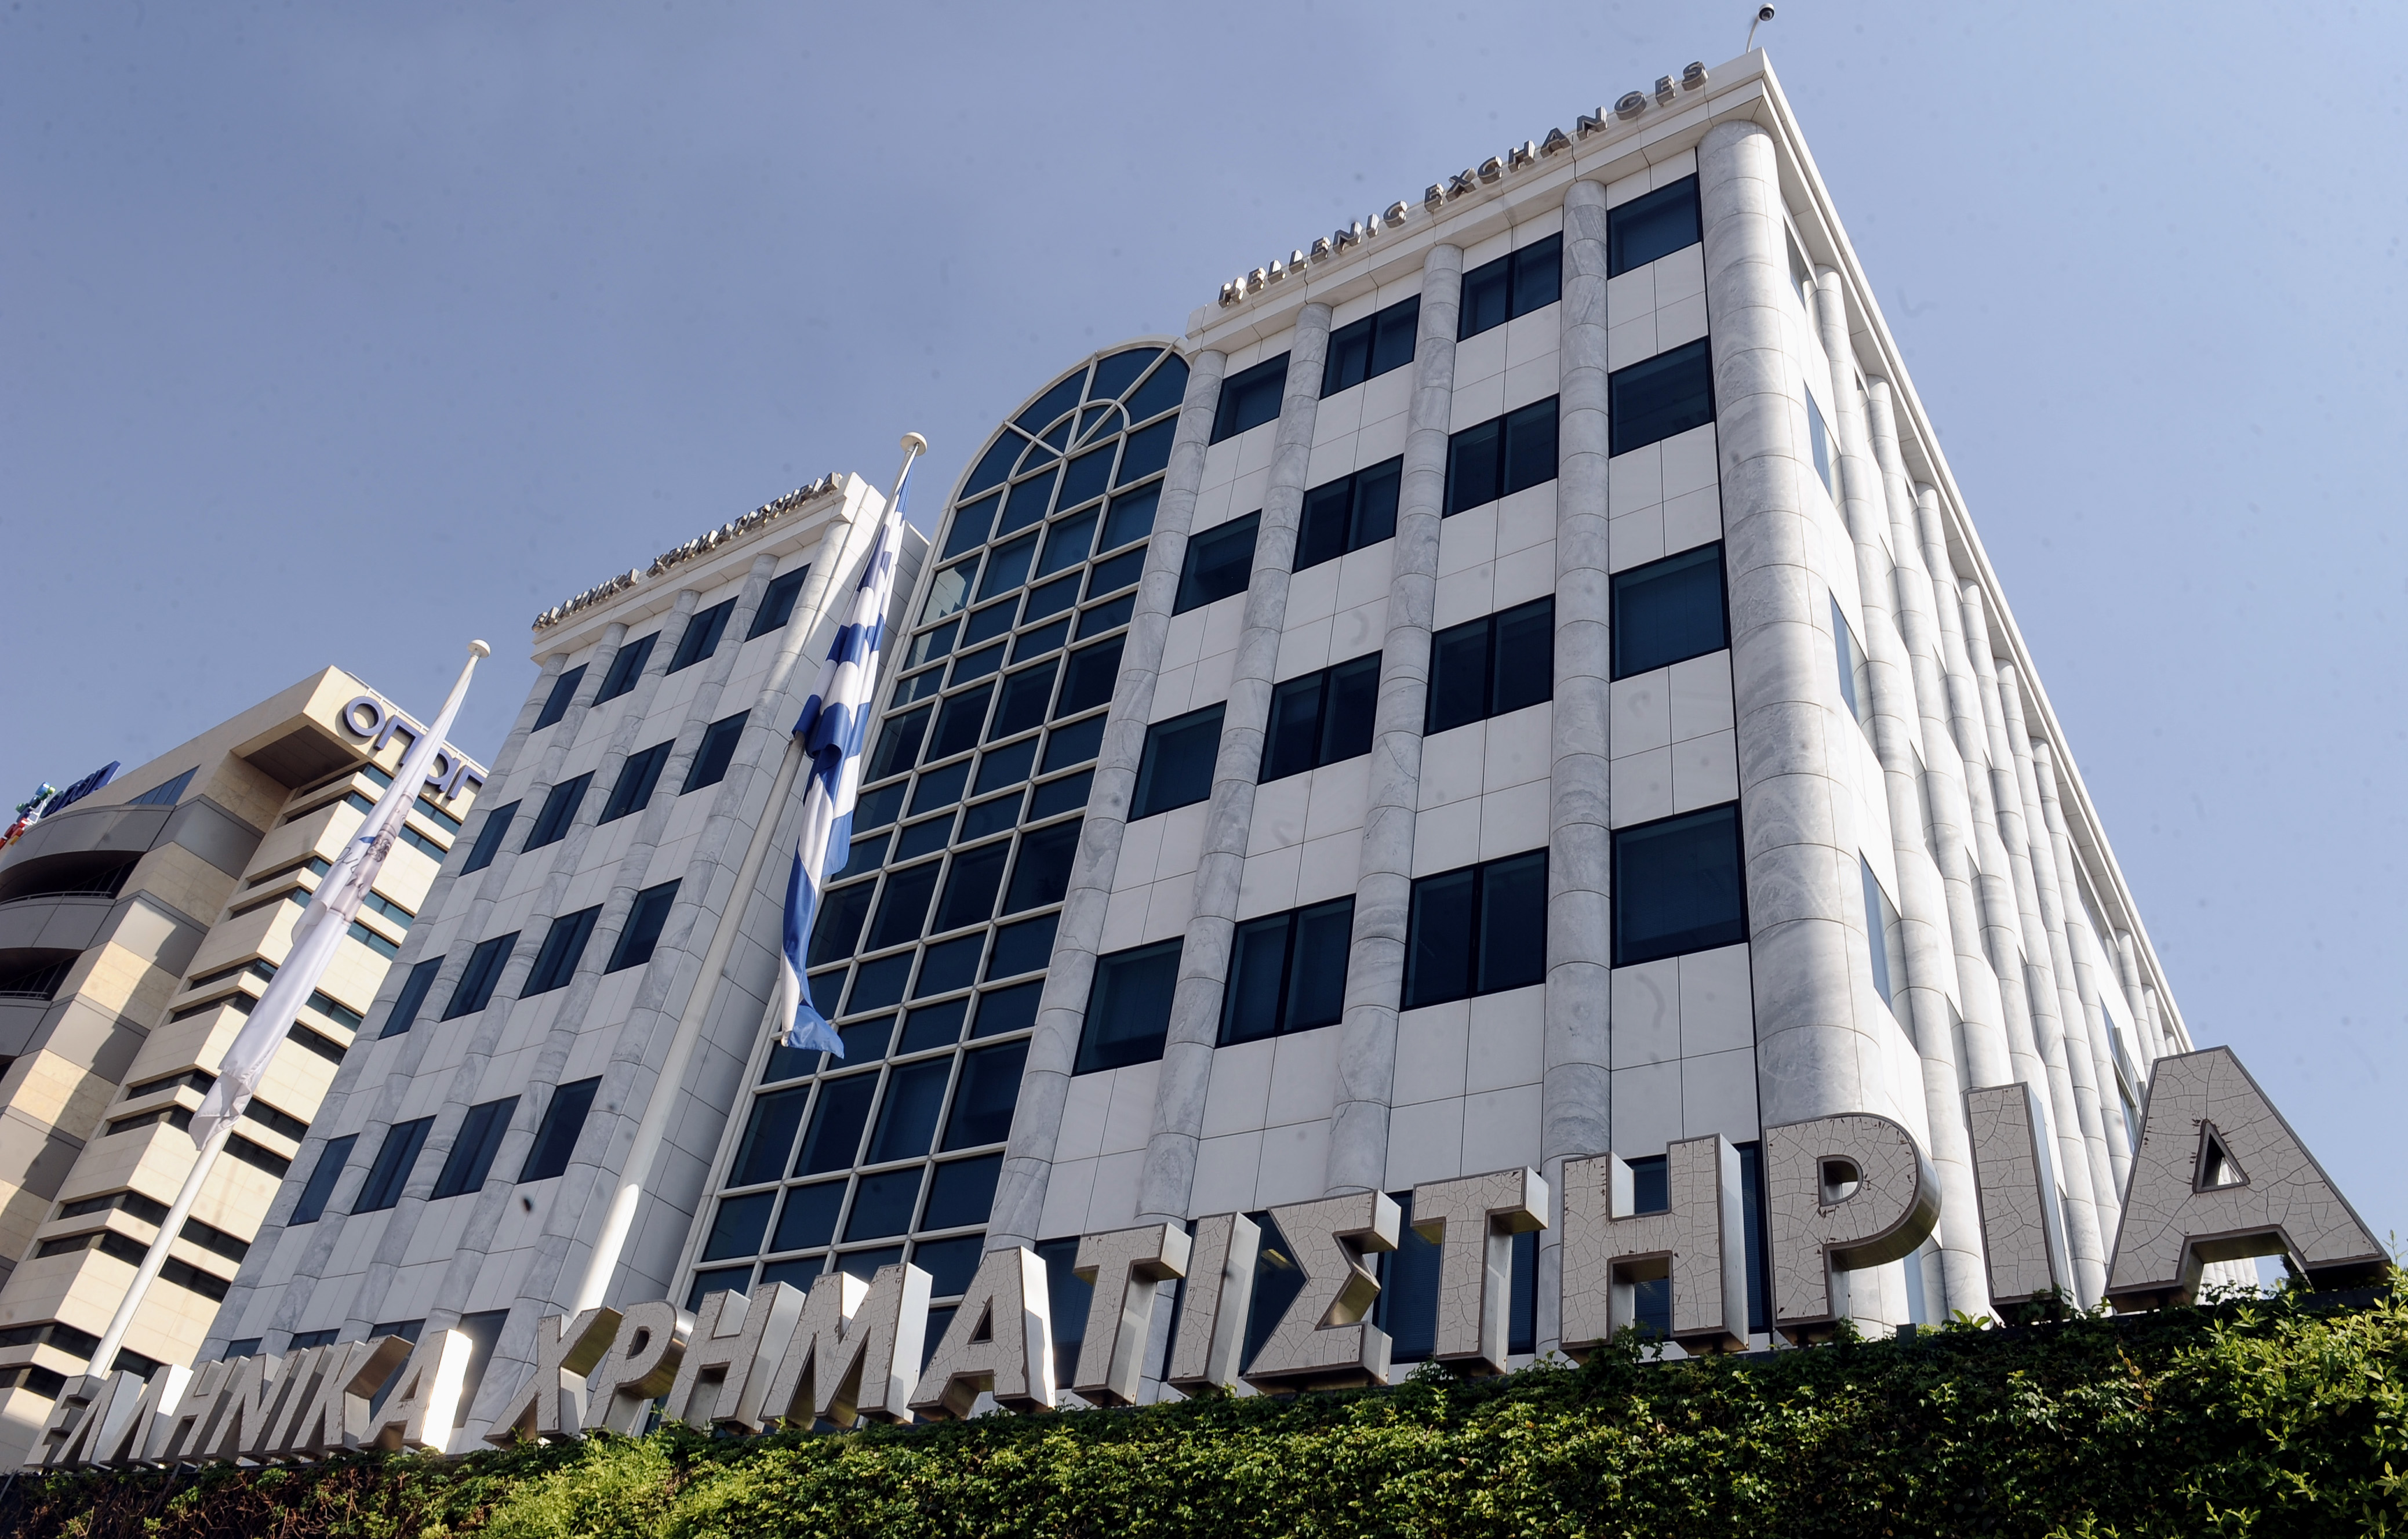 Με άνοδο 2,20% έκλεισε το Χρηματιστήριο Αθηνών την Παρασκευή